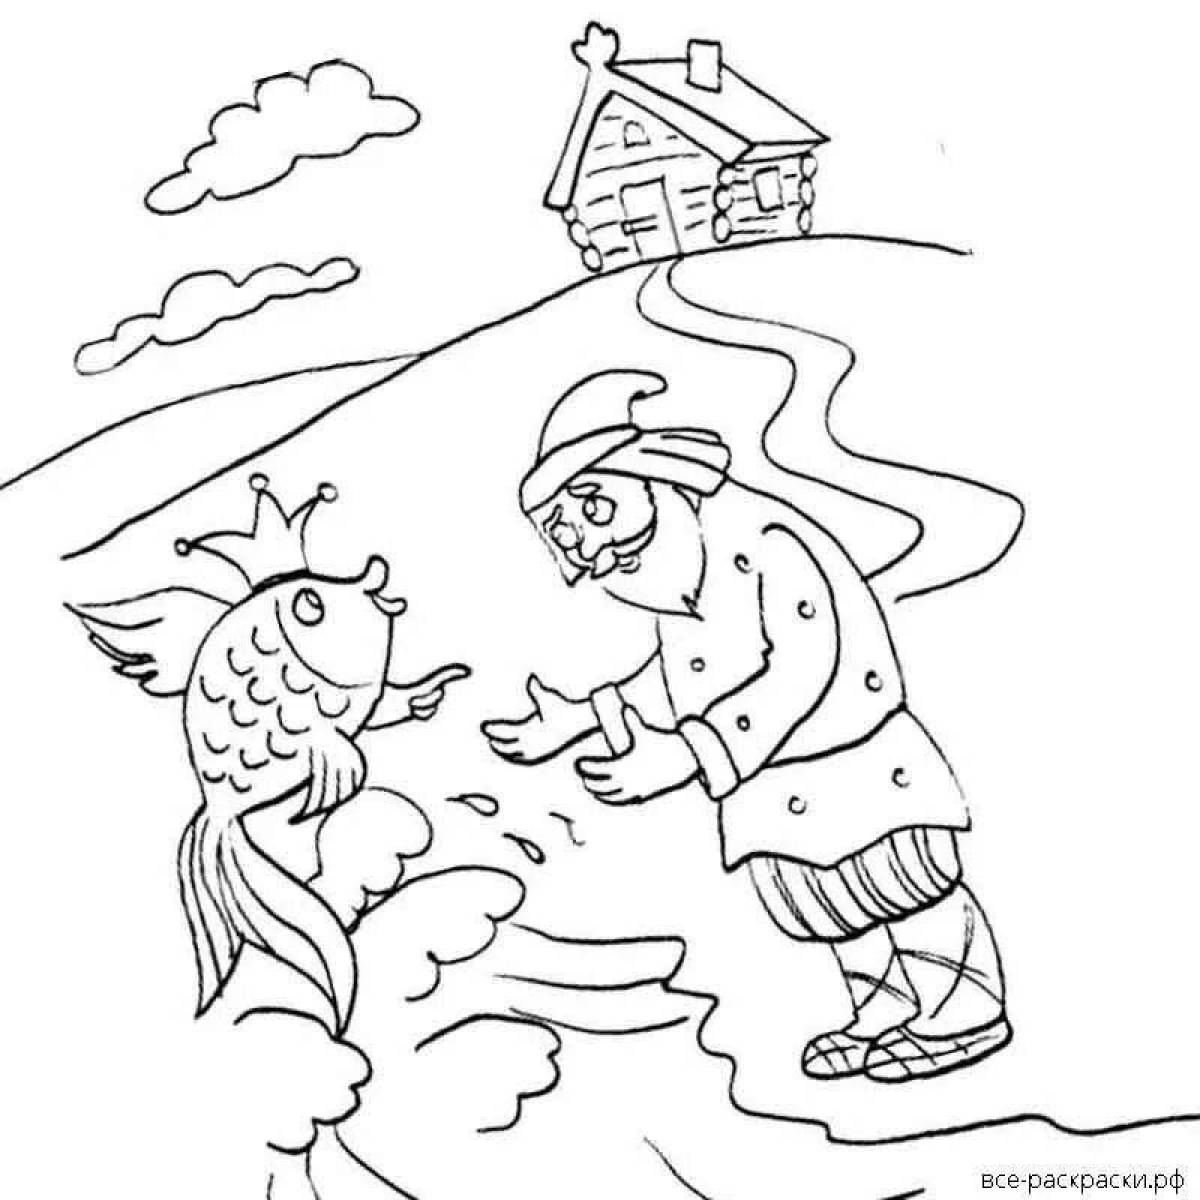 Иллюстрация к сказке Пушкина Золотая рыбка 1 класс